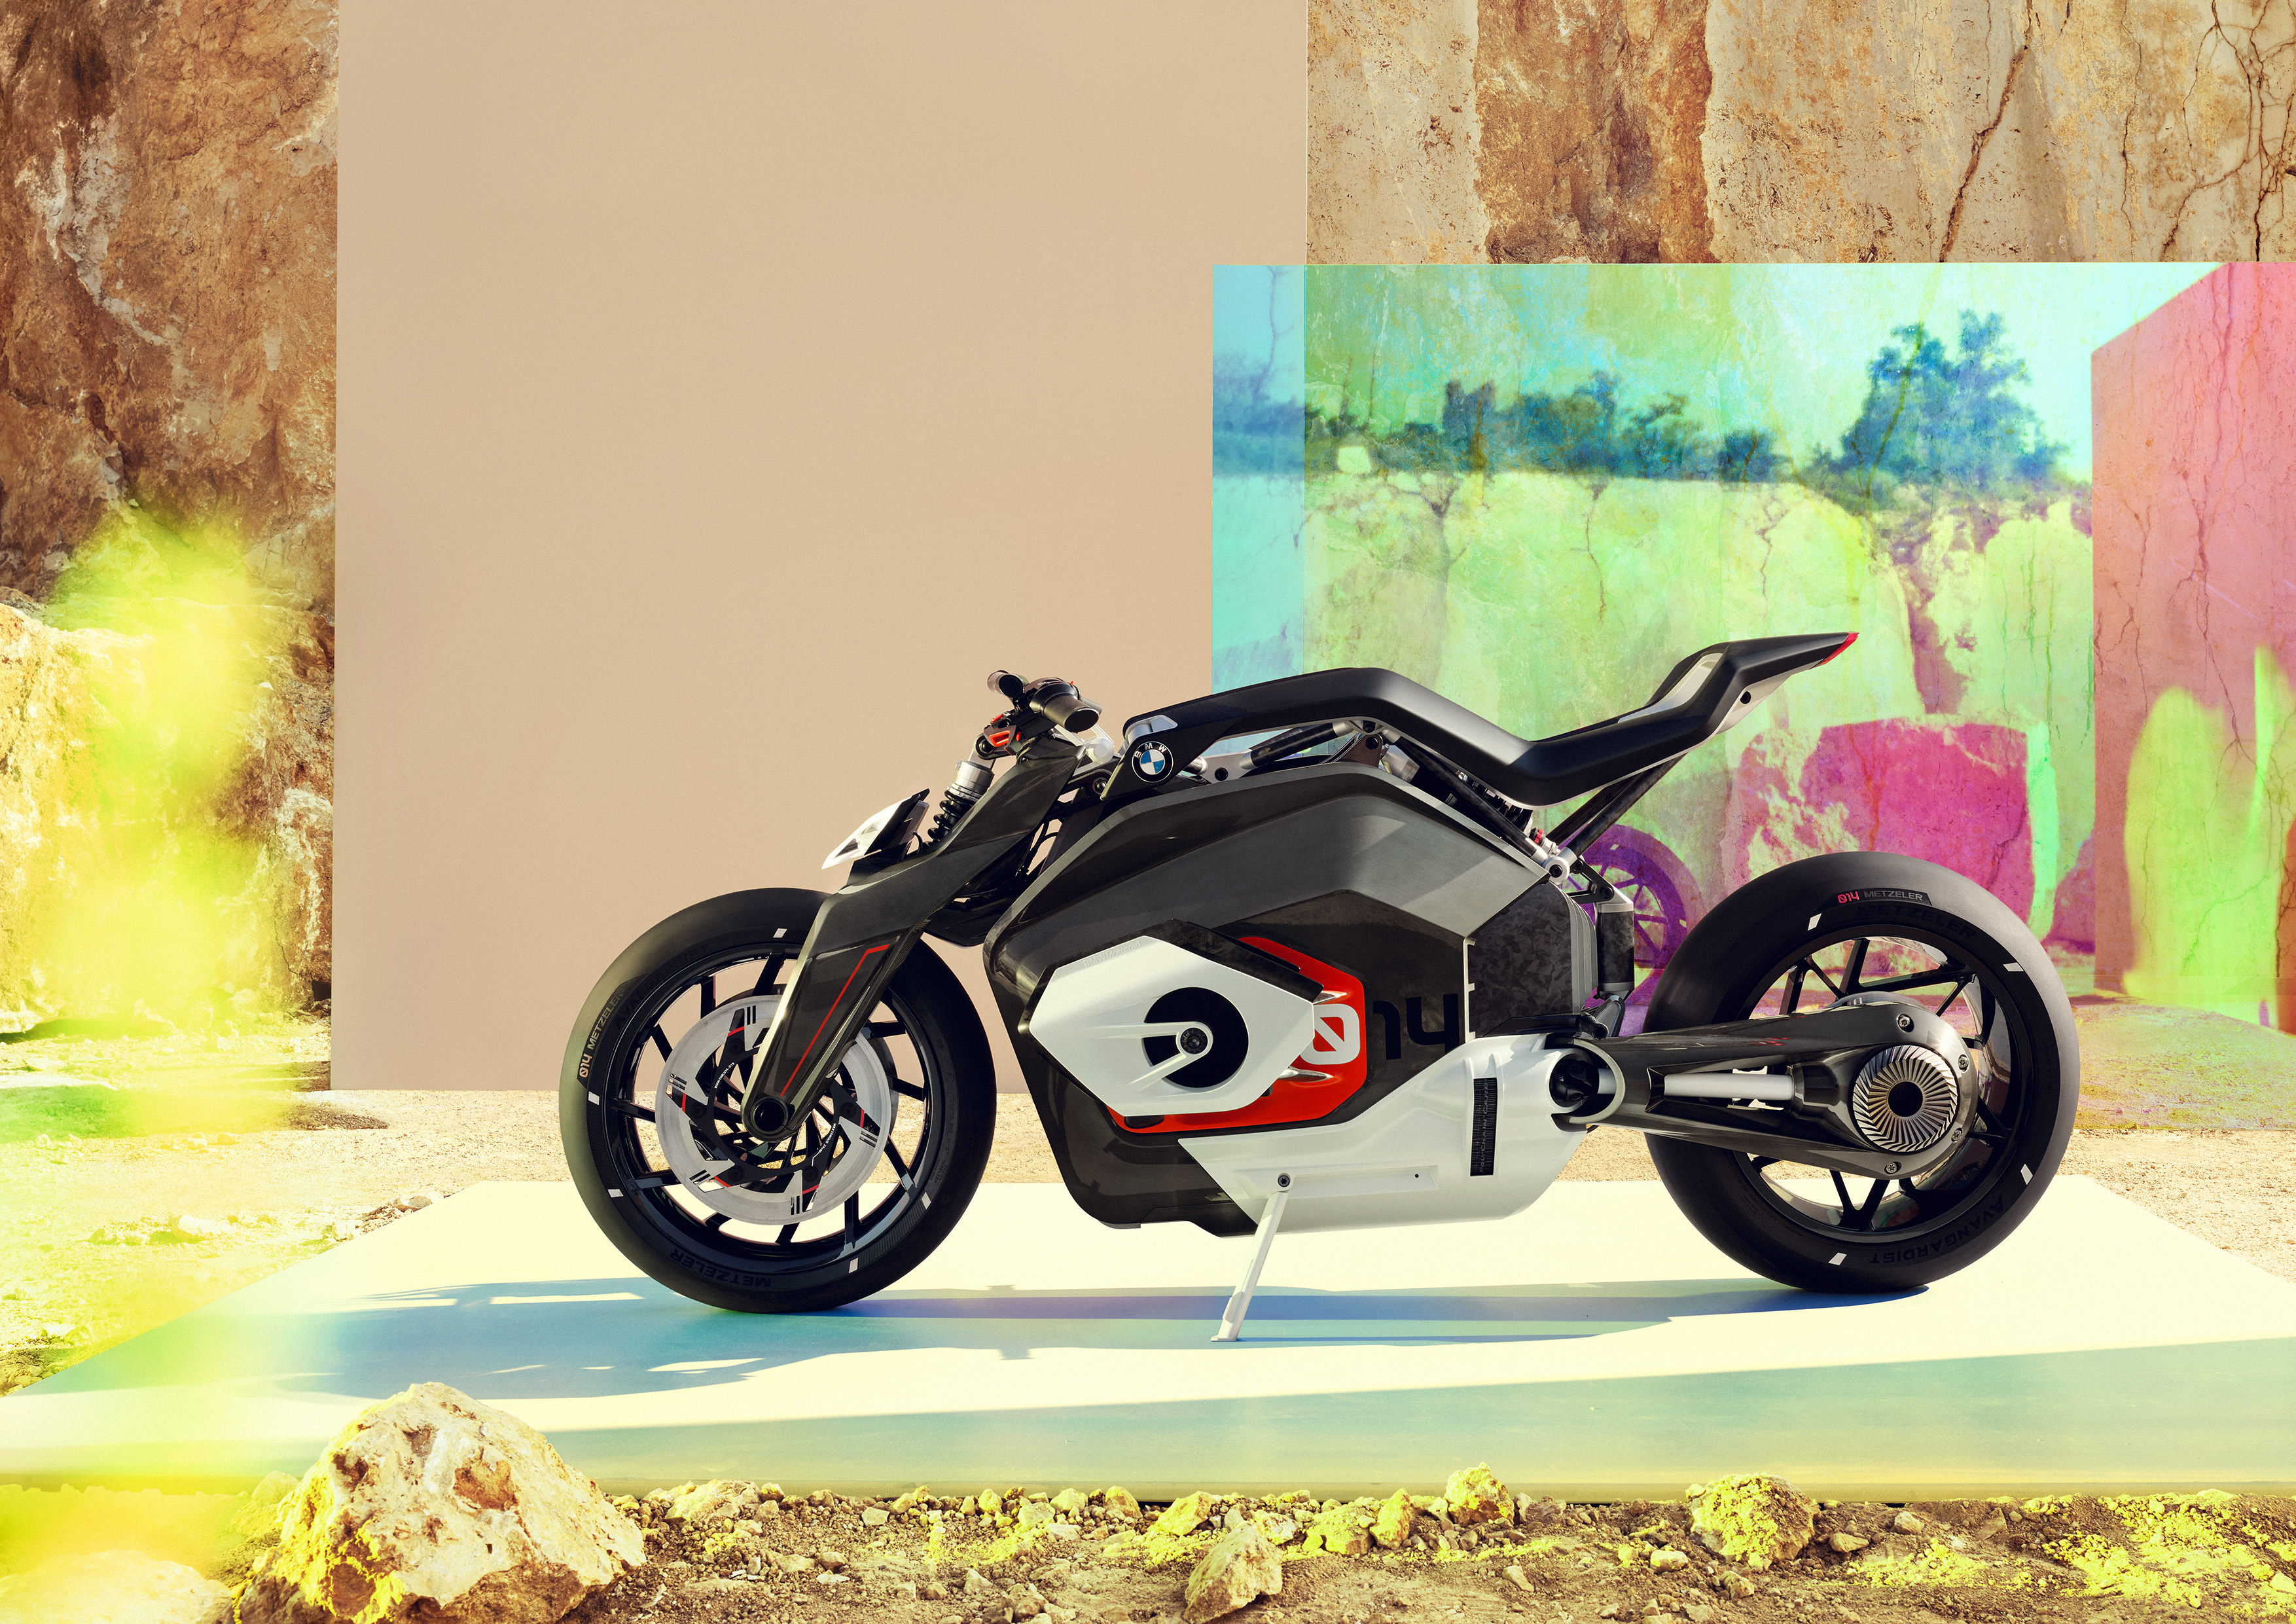 BMW s'intéresse de près aux motos électriques : la Vision DC Roadster à l'horizon ?